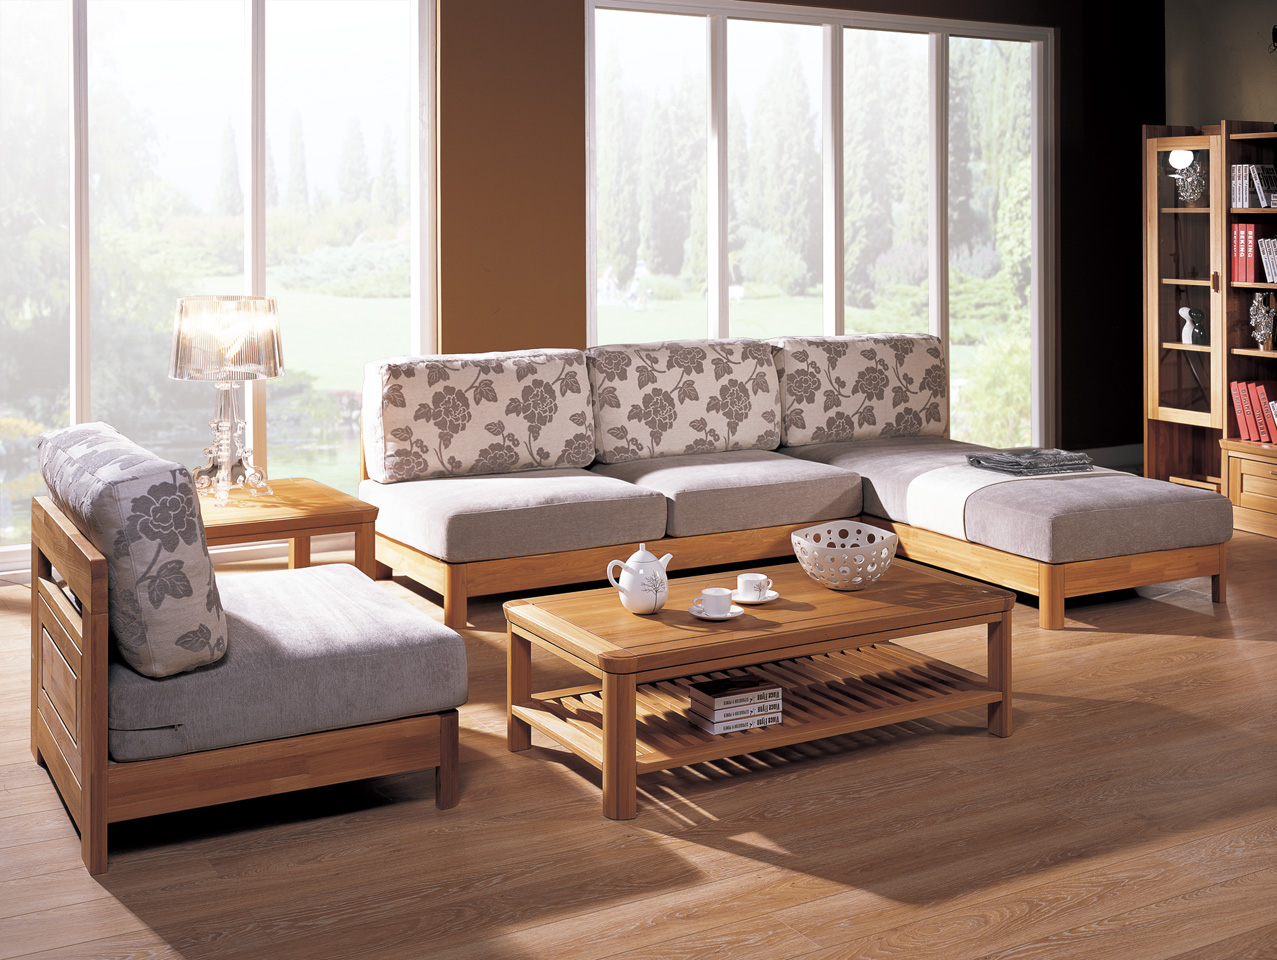 产品 常州家具厂   主营:各种中高档 中式沙发,公司集合了众多具有